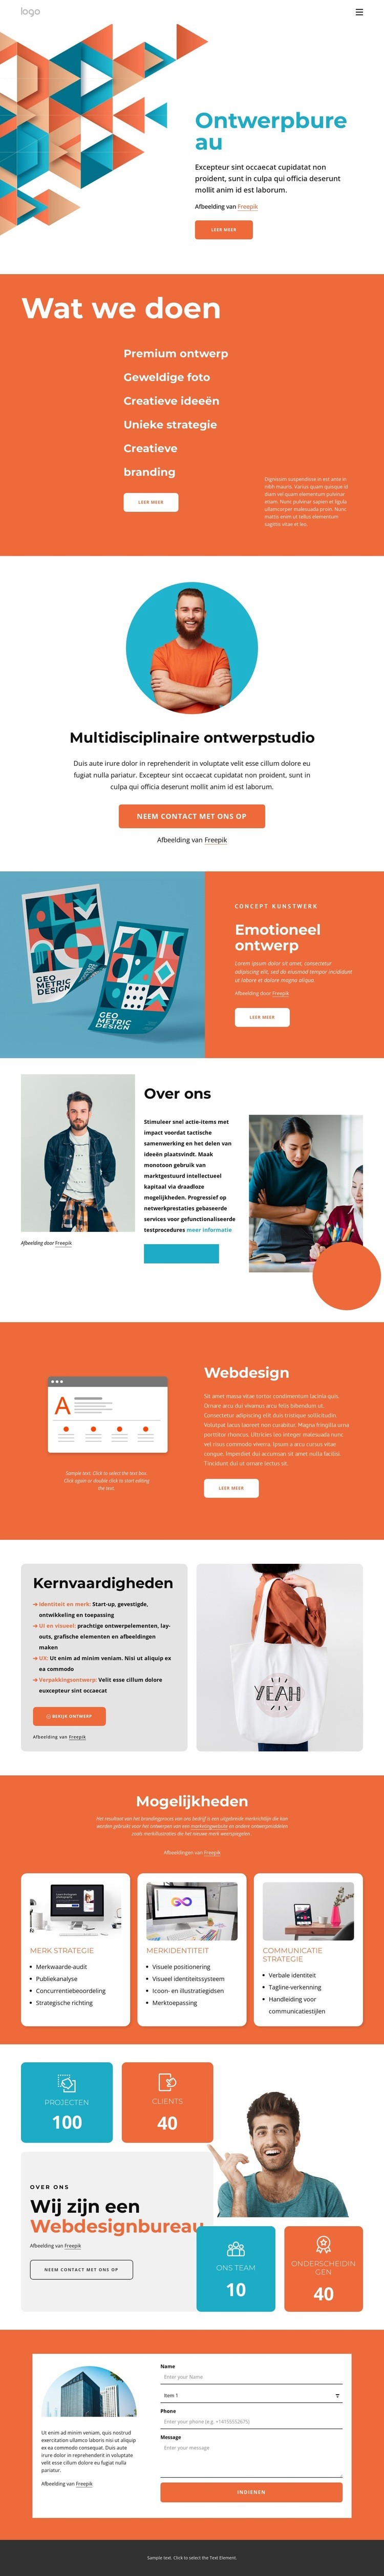 Creatieve ideeën en geweldig design Website ontwerp